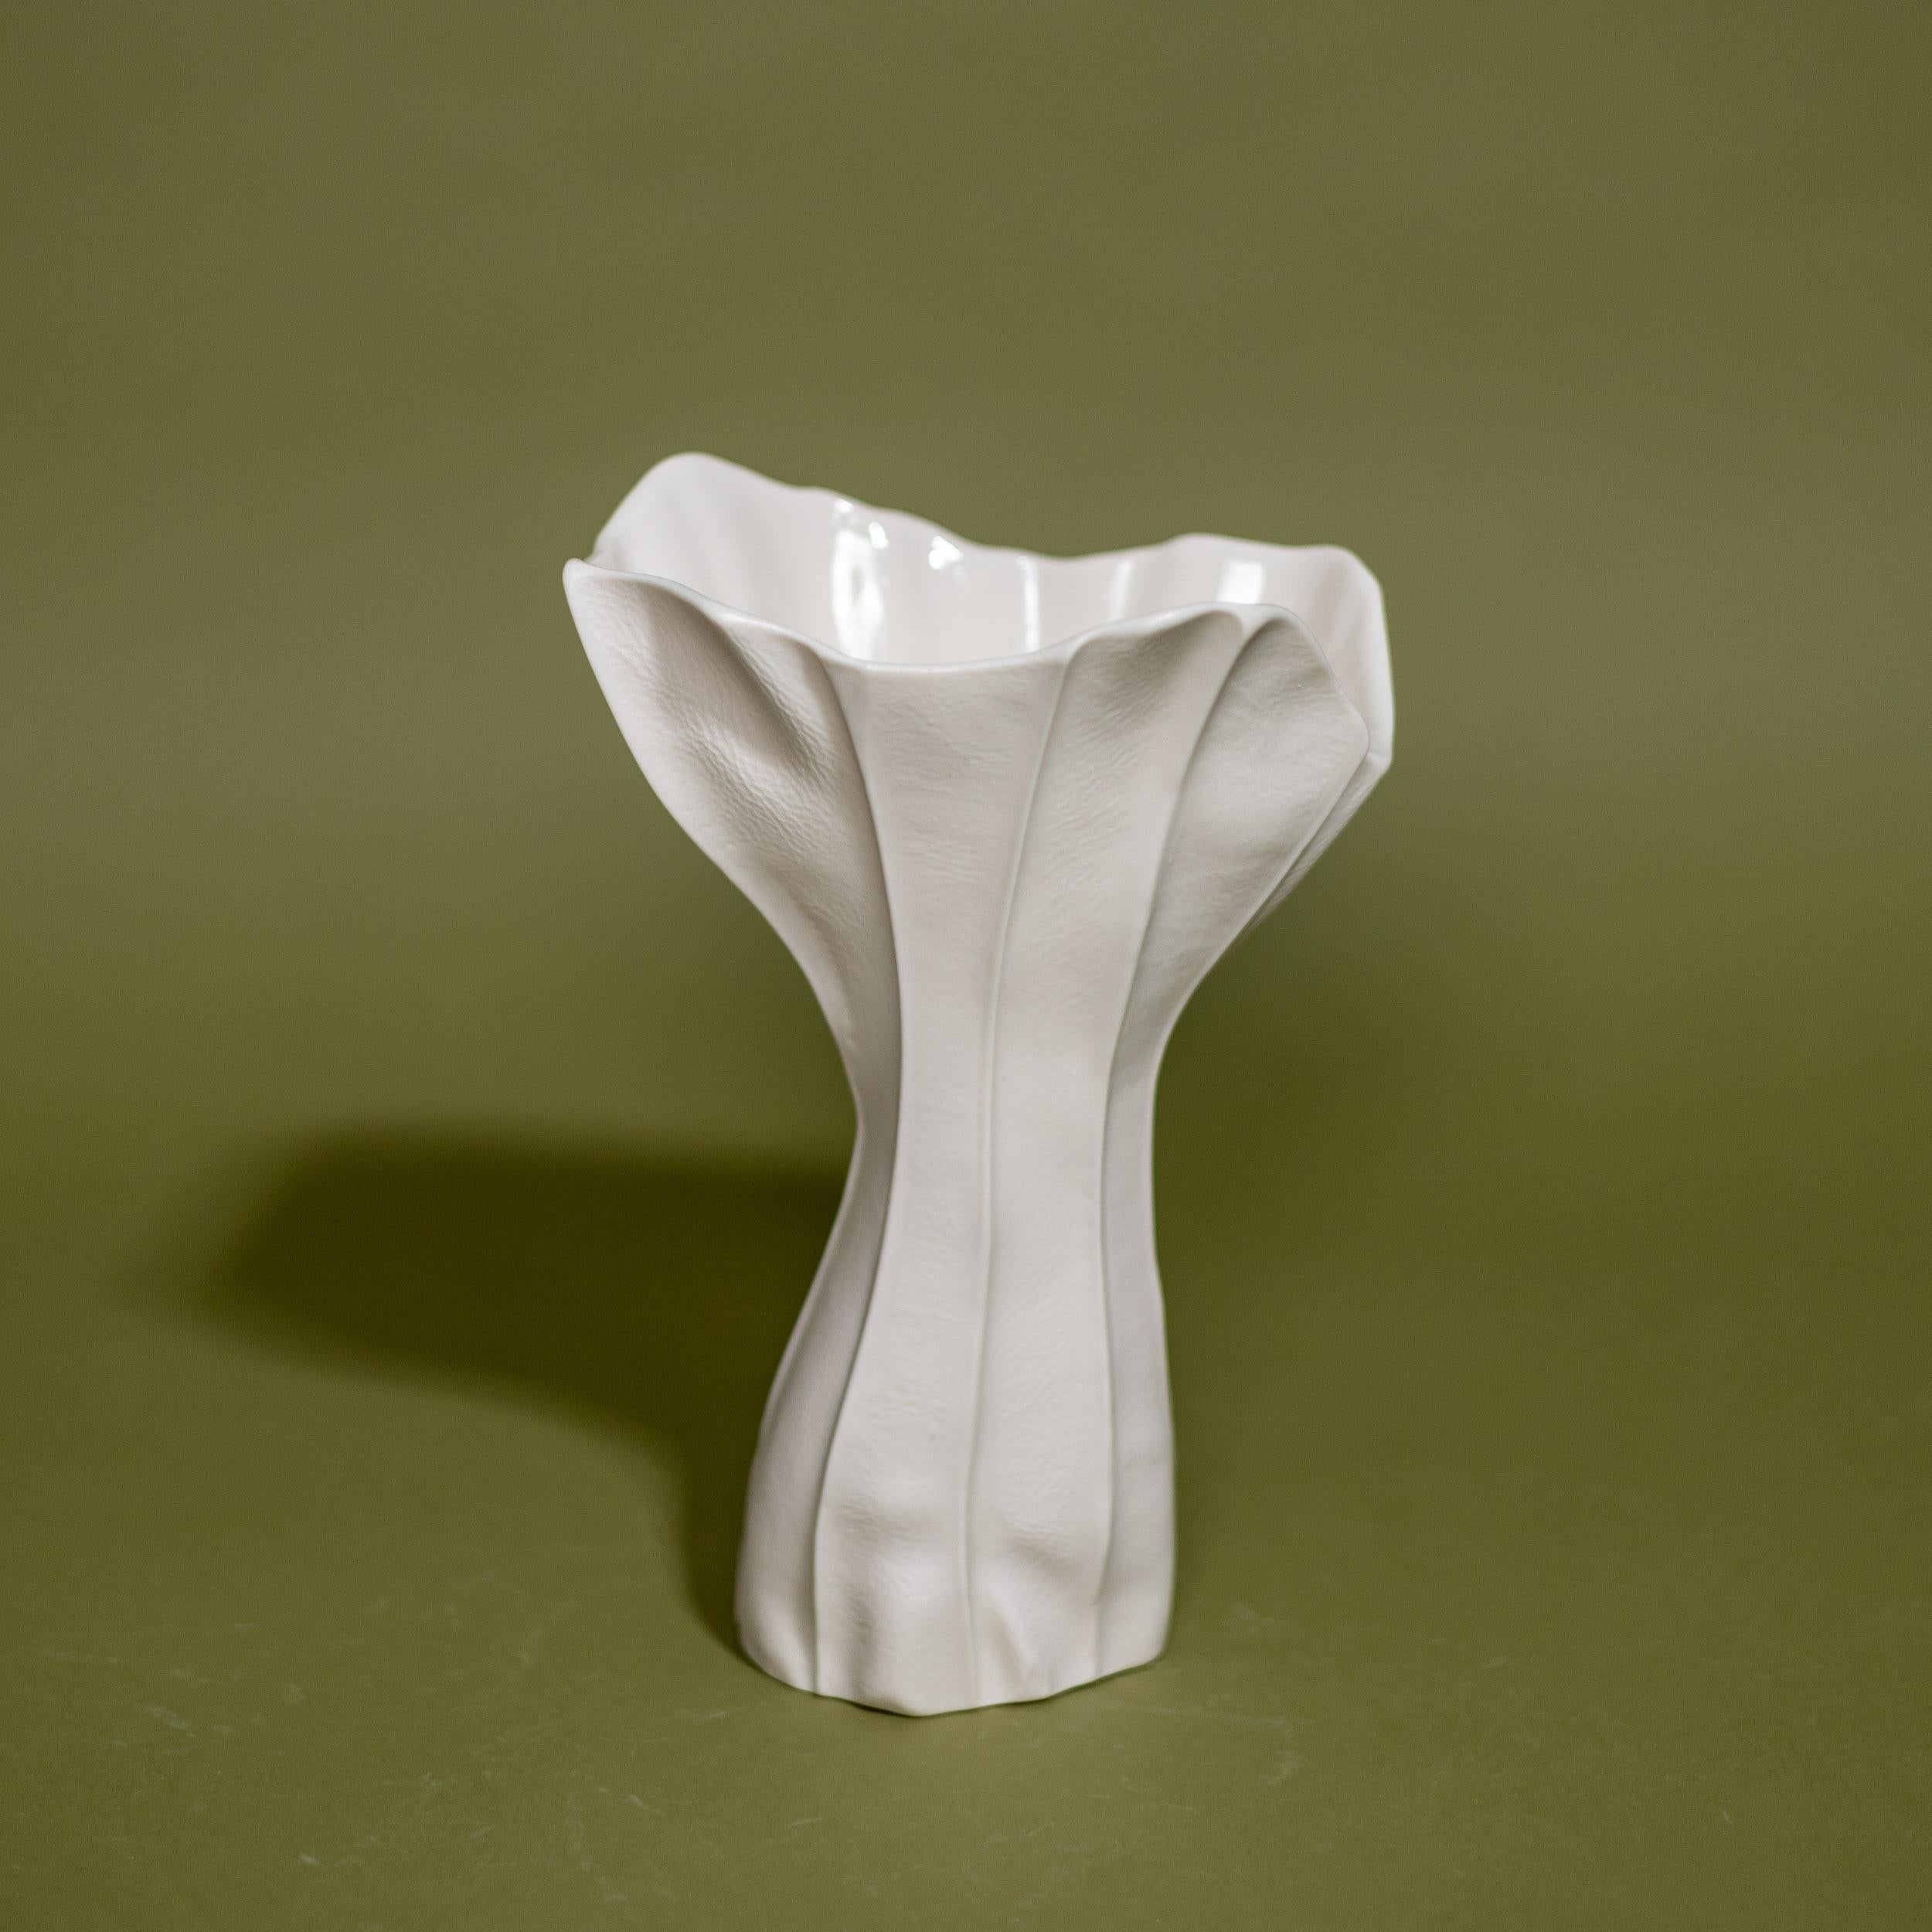 In-Stock, Set of 3 White Ceramic Vases & Bowl, Luft Tanaka, Porcelain, Organic 1